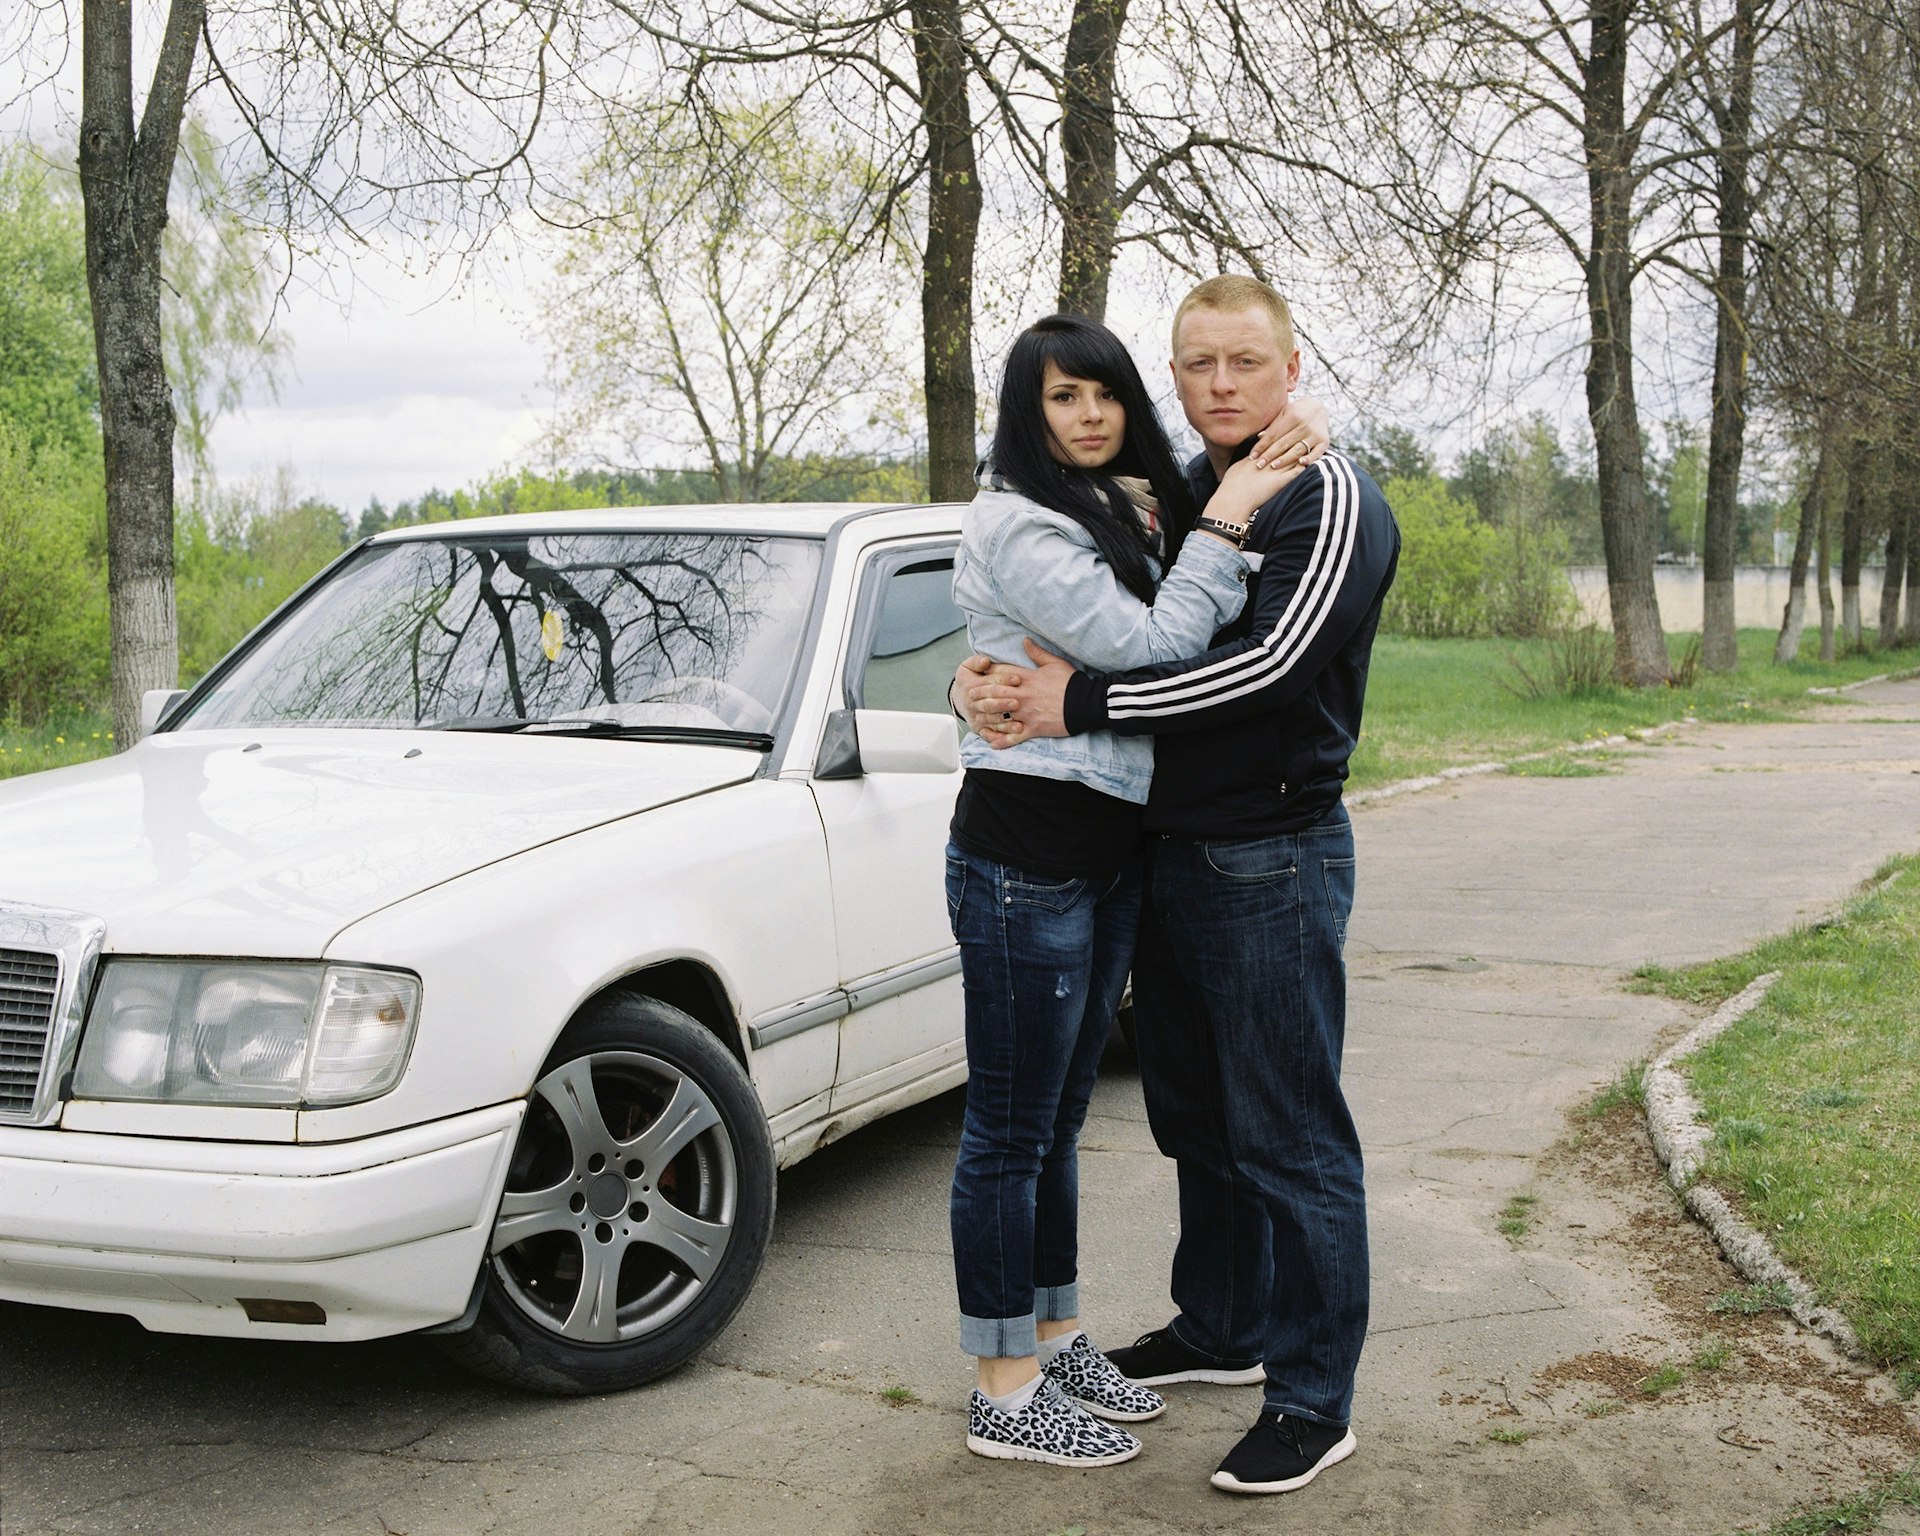 Capturing the forgotten communities of Belarus